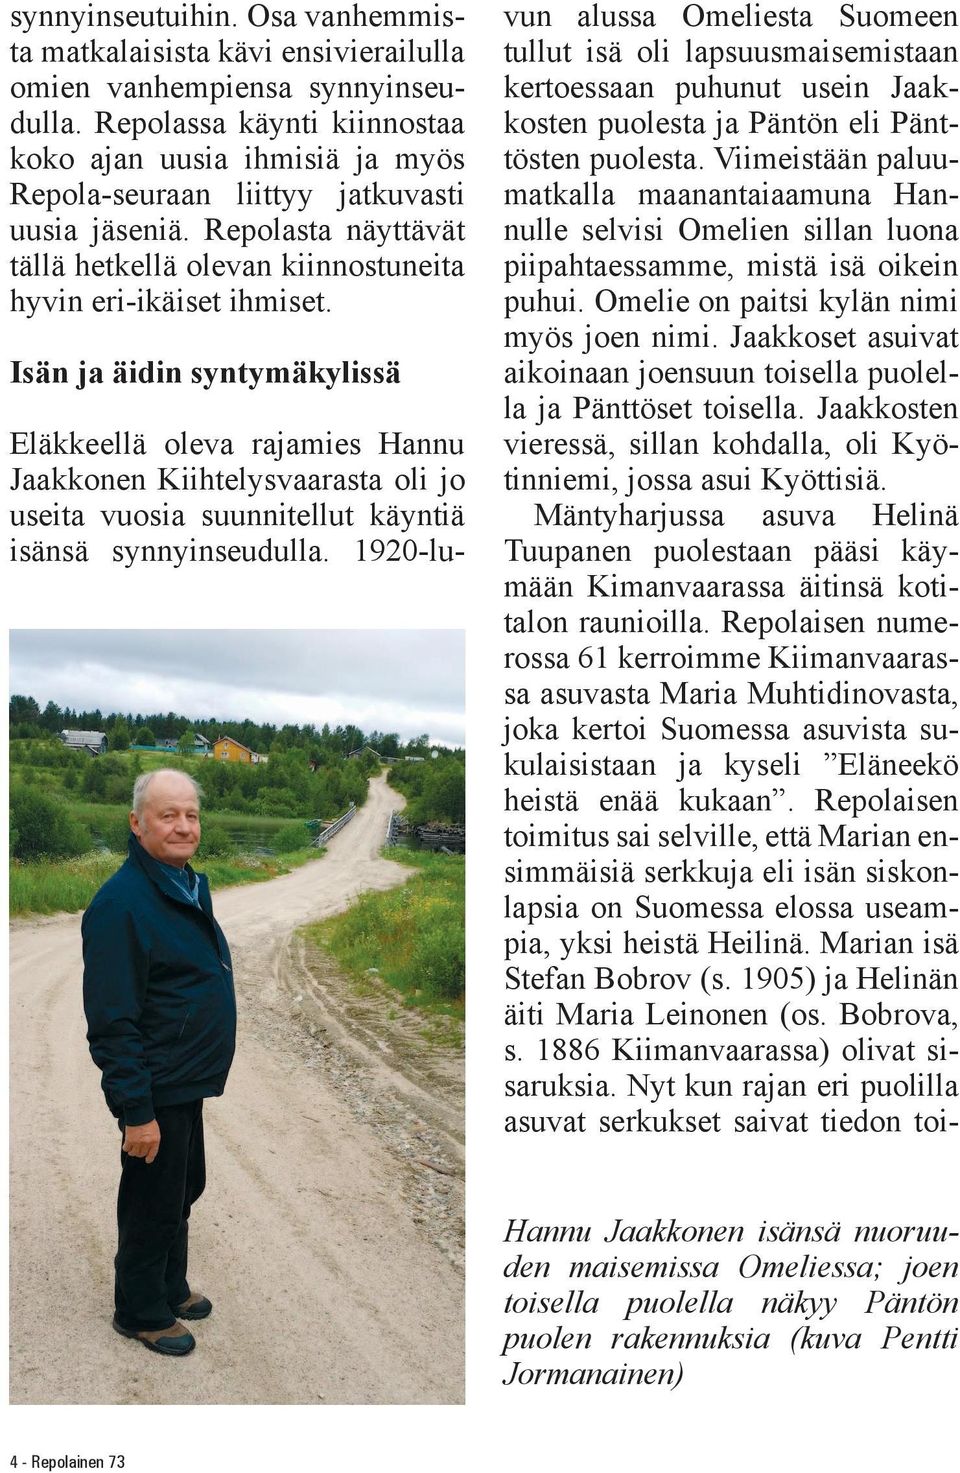 Isän ja äidin syntymäkylissä Eläkkeellä oleva rajamies Hannu Jaakkonen Kiihtelysvaarasta oli jo useita vuosia suunnitellut käyntiä isänsä synnyinseudulla.